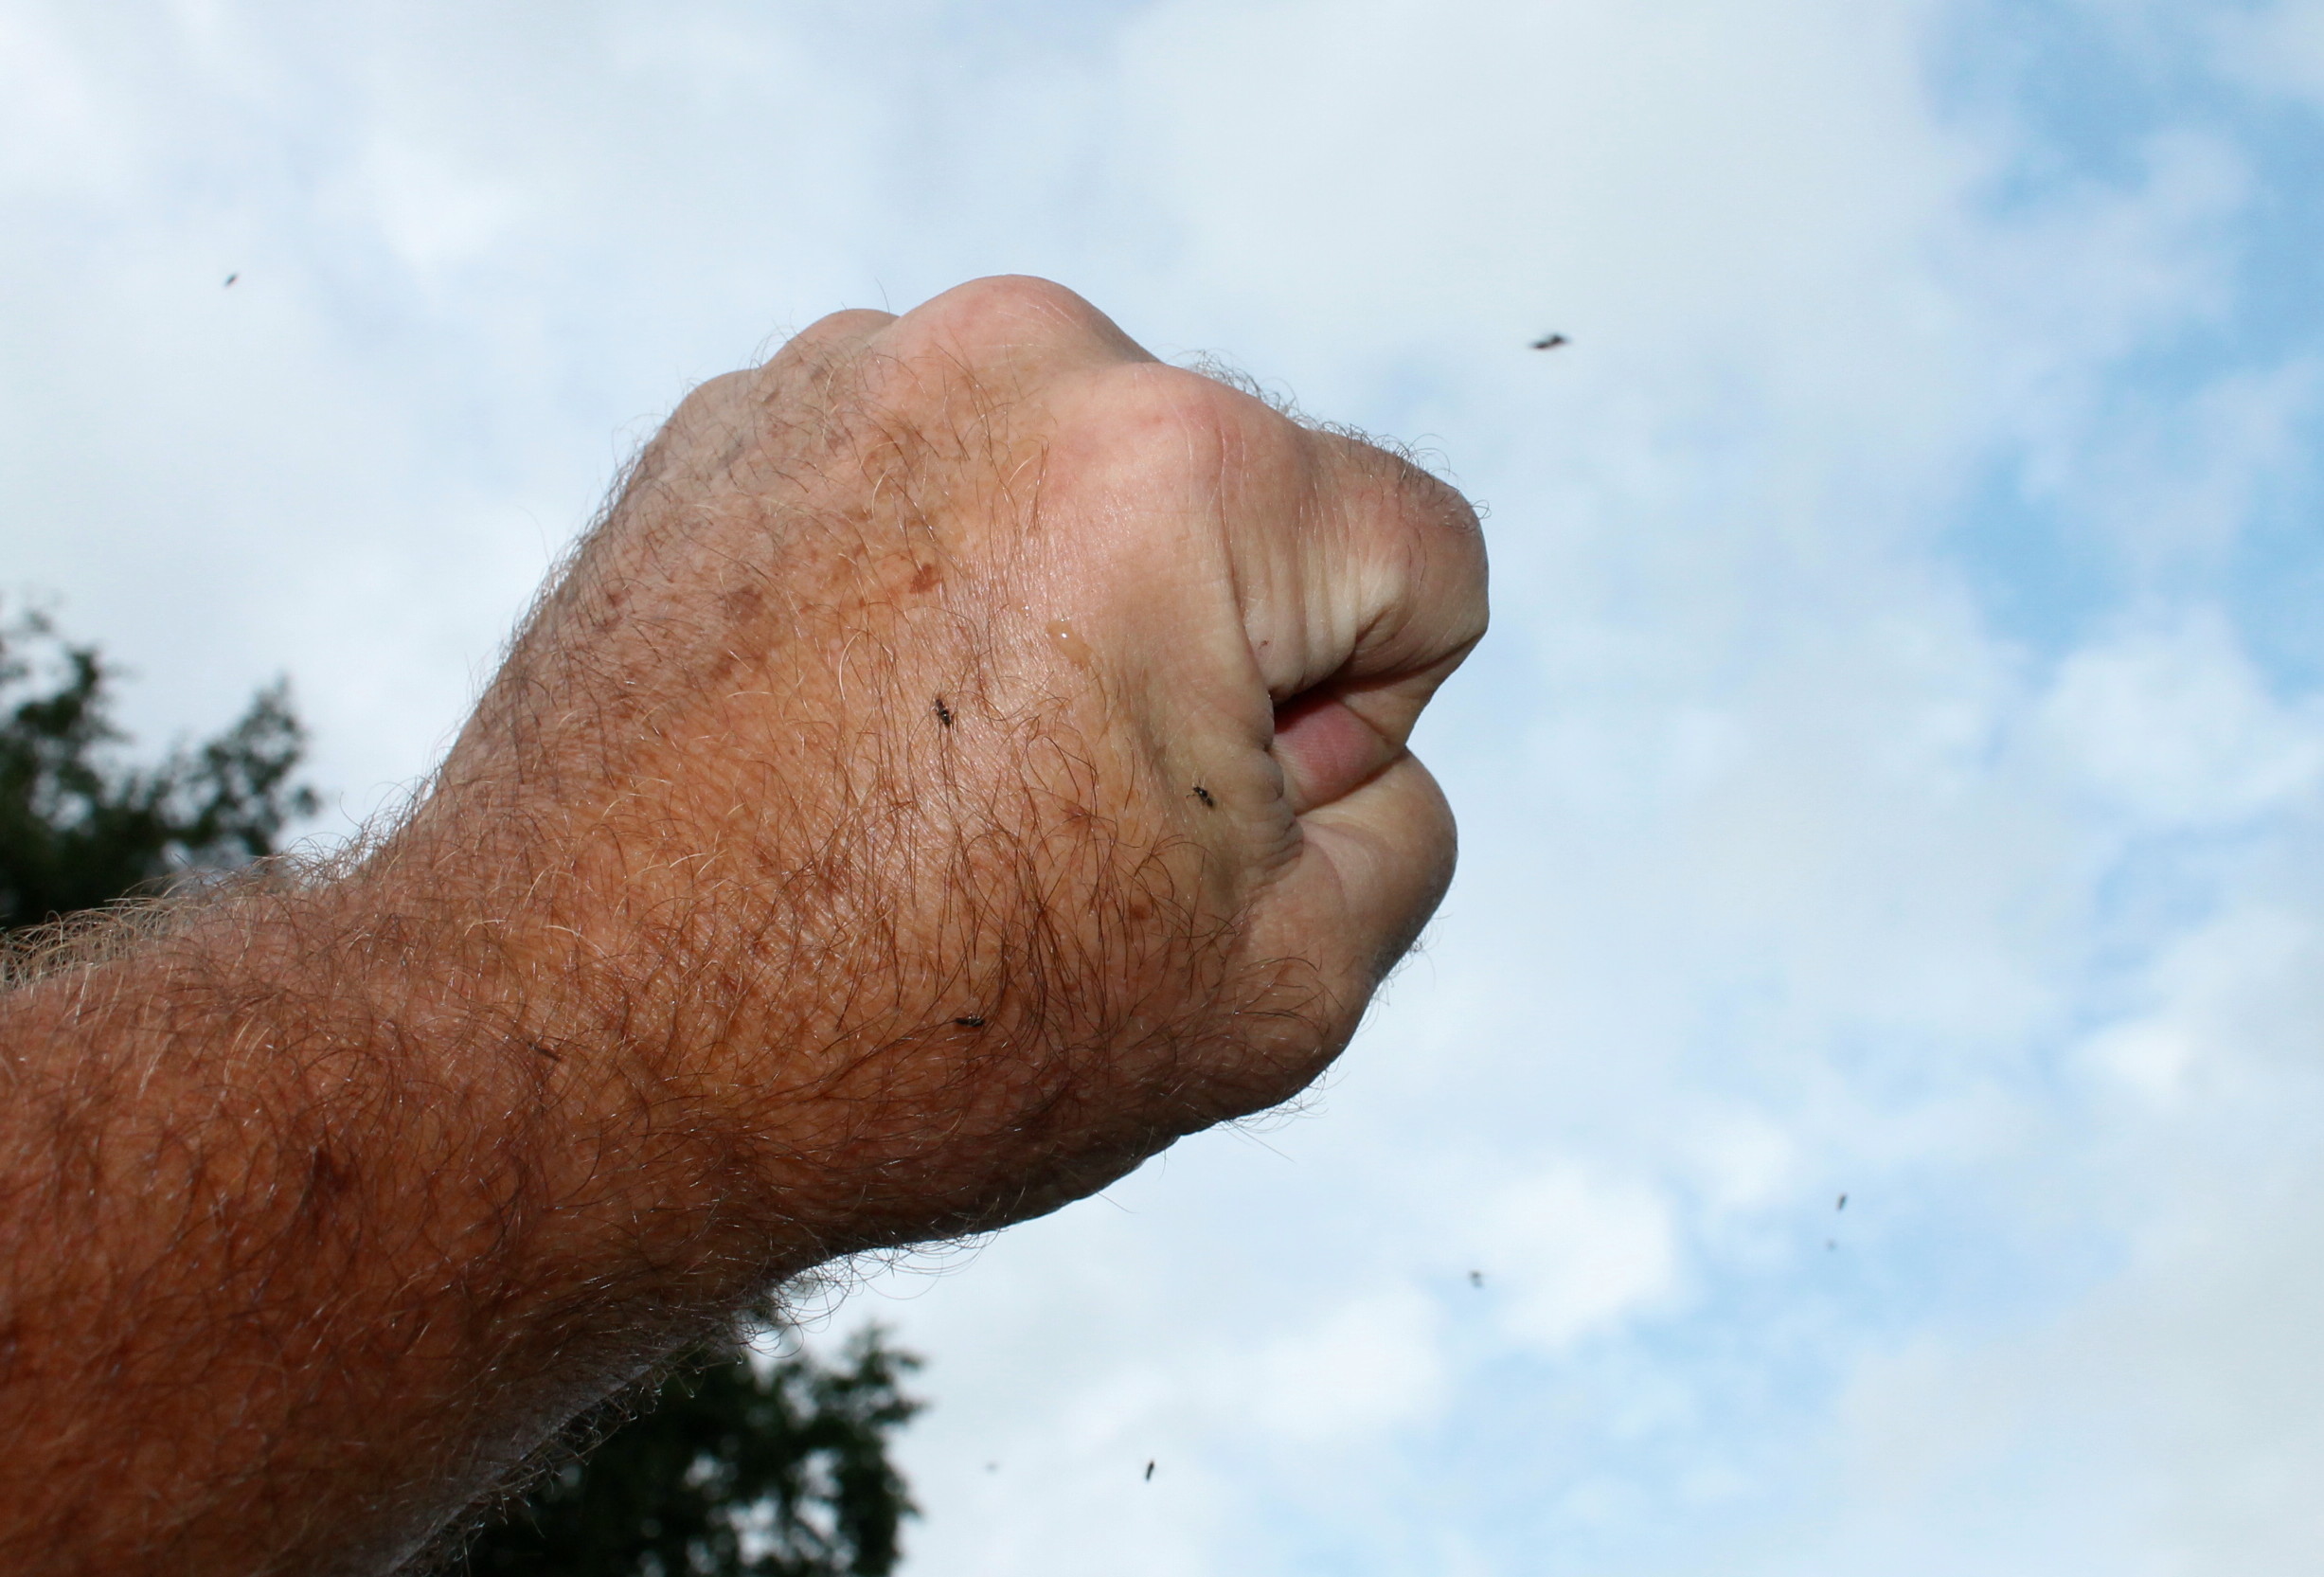 Black Flies Making Garden Life Miserable | Garden Housecalls